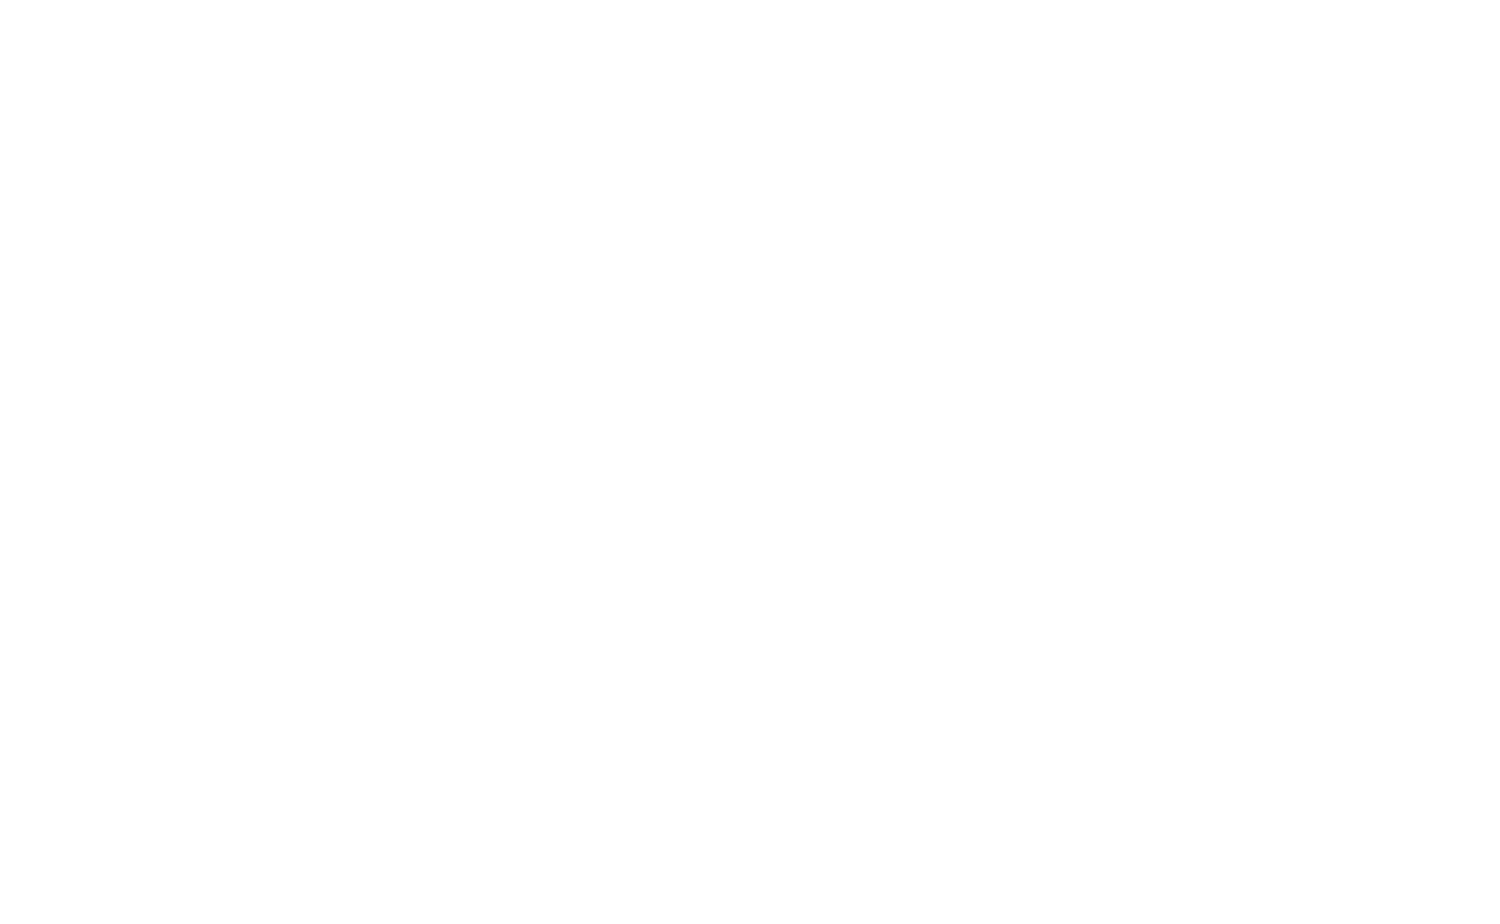 360 dwellings logo